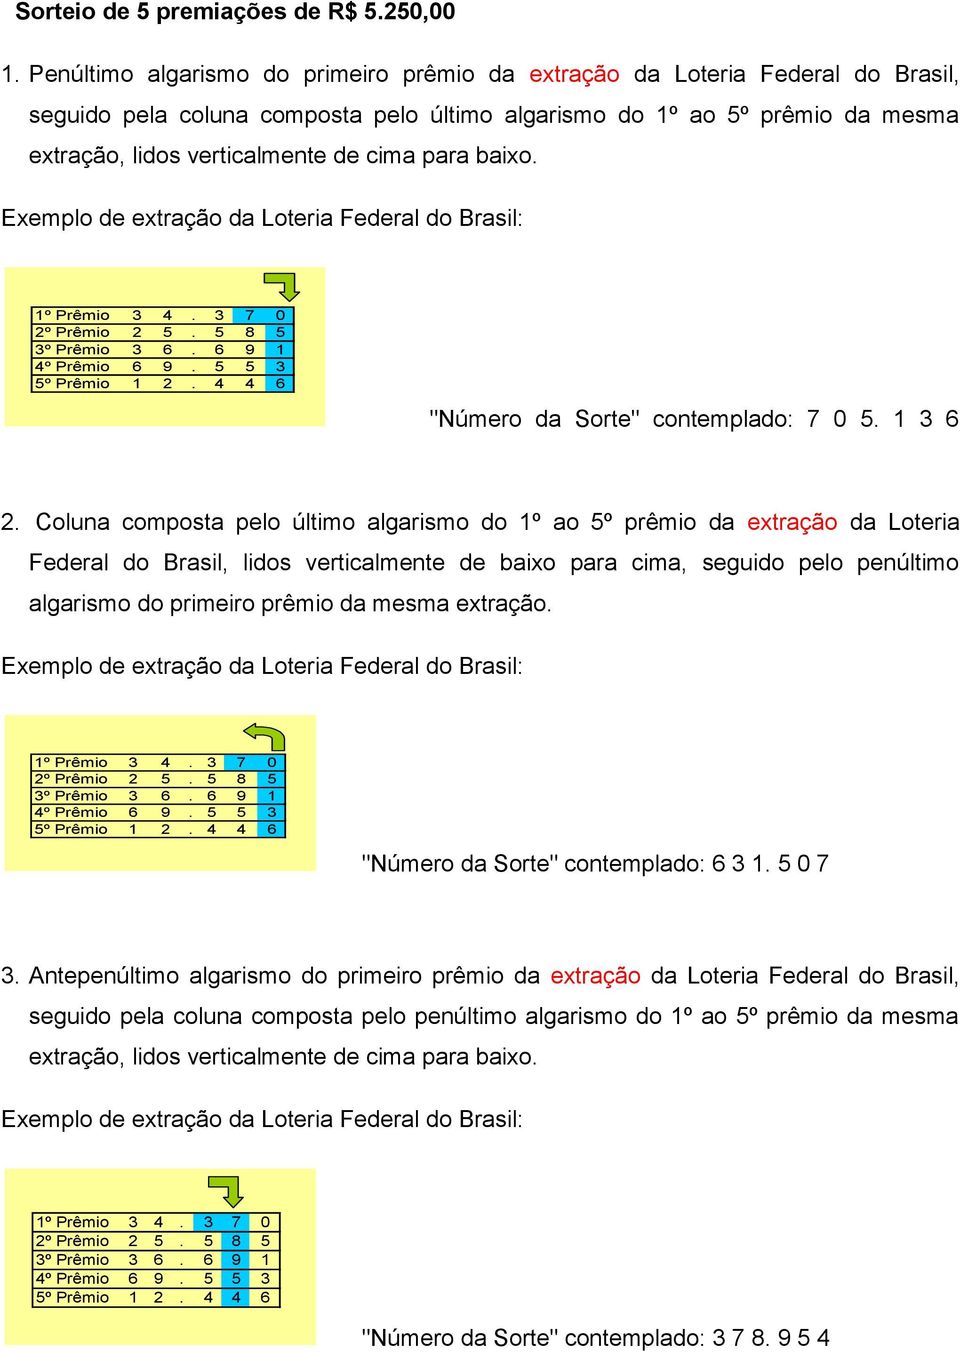 para baixo. Exemplo de extração da Loteria Federal do Brasil: 1º Prêmio 3 4. 3 7 0 2º Prêmio 2 5. 5 8 5 3º Prêmio 3 6. 6 9 1 4º Prêmio 6 9. 5 5 3 5º Prêmio 1 2.